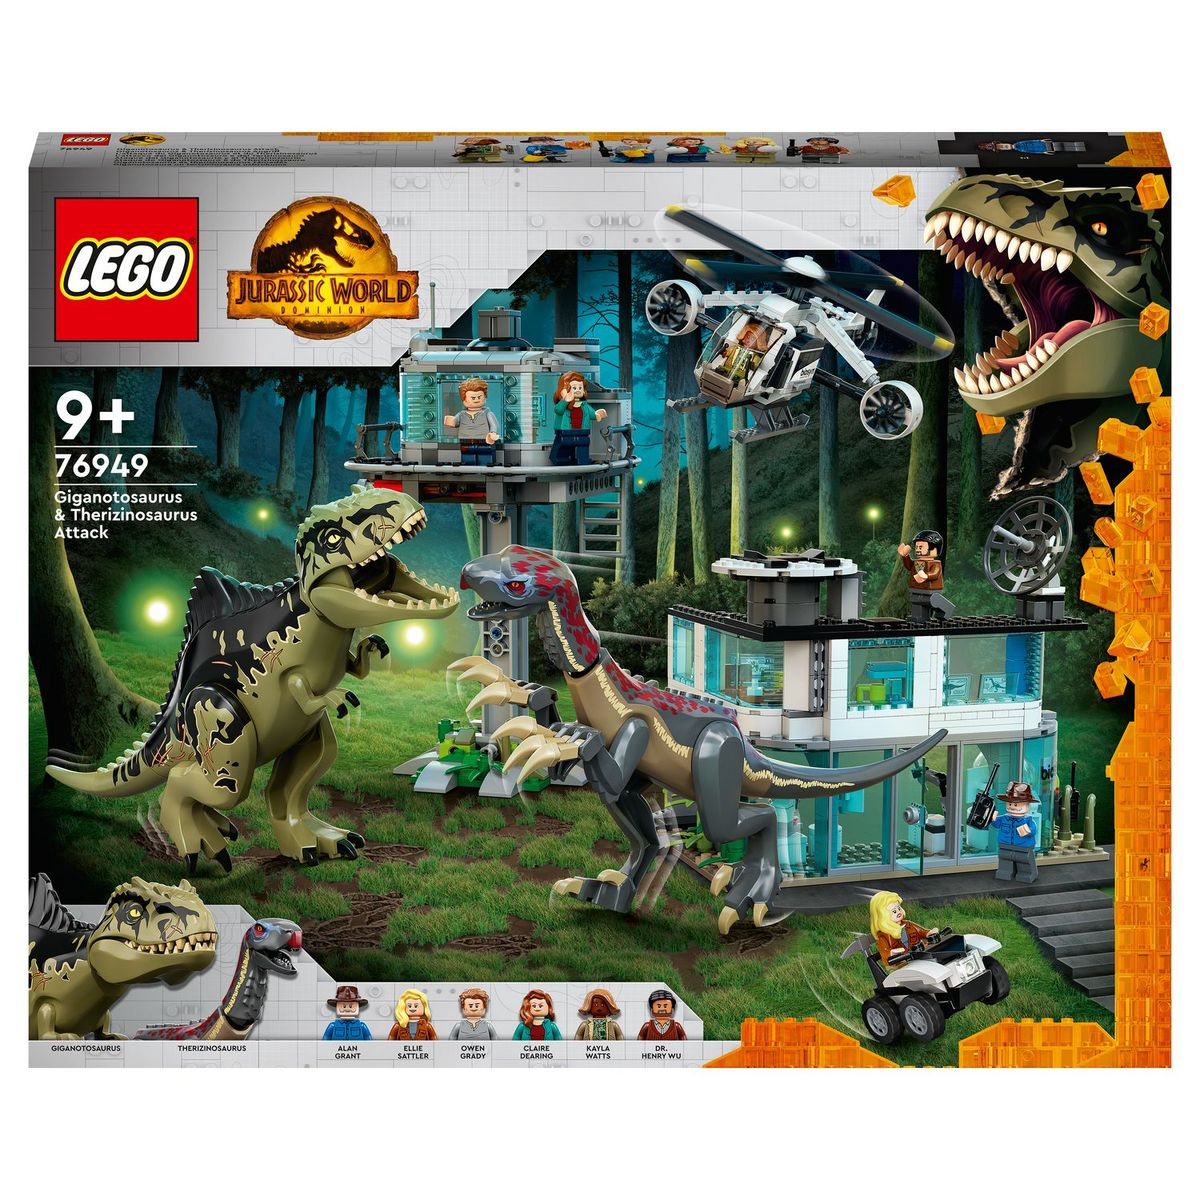 LEGO Jurassic World 76949 L’Attaque du Giganotosaurus et du